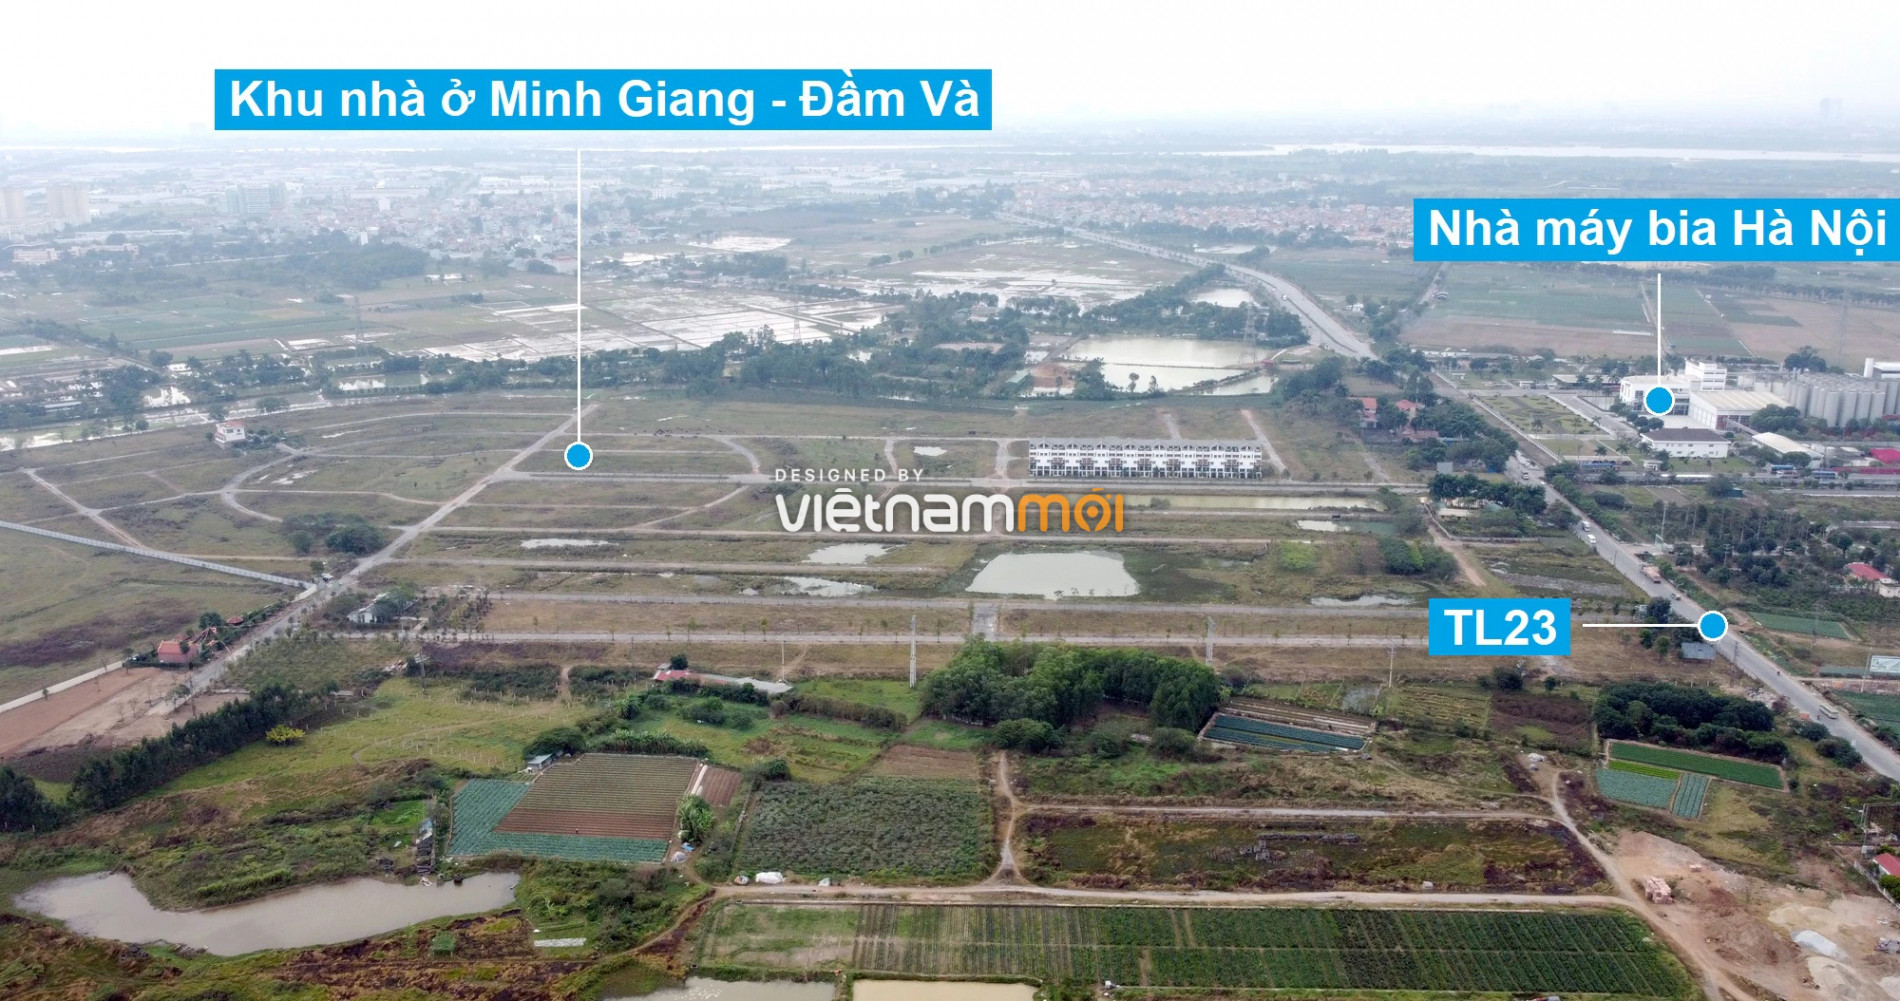 Toàn cảnh 6 dự án chậm triển khai ở huyện Mê Linh sắp tái triển khai - Ảnh 6.